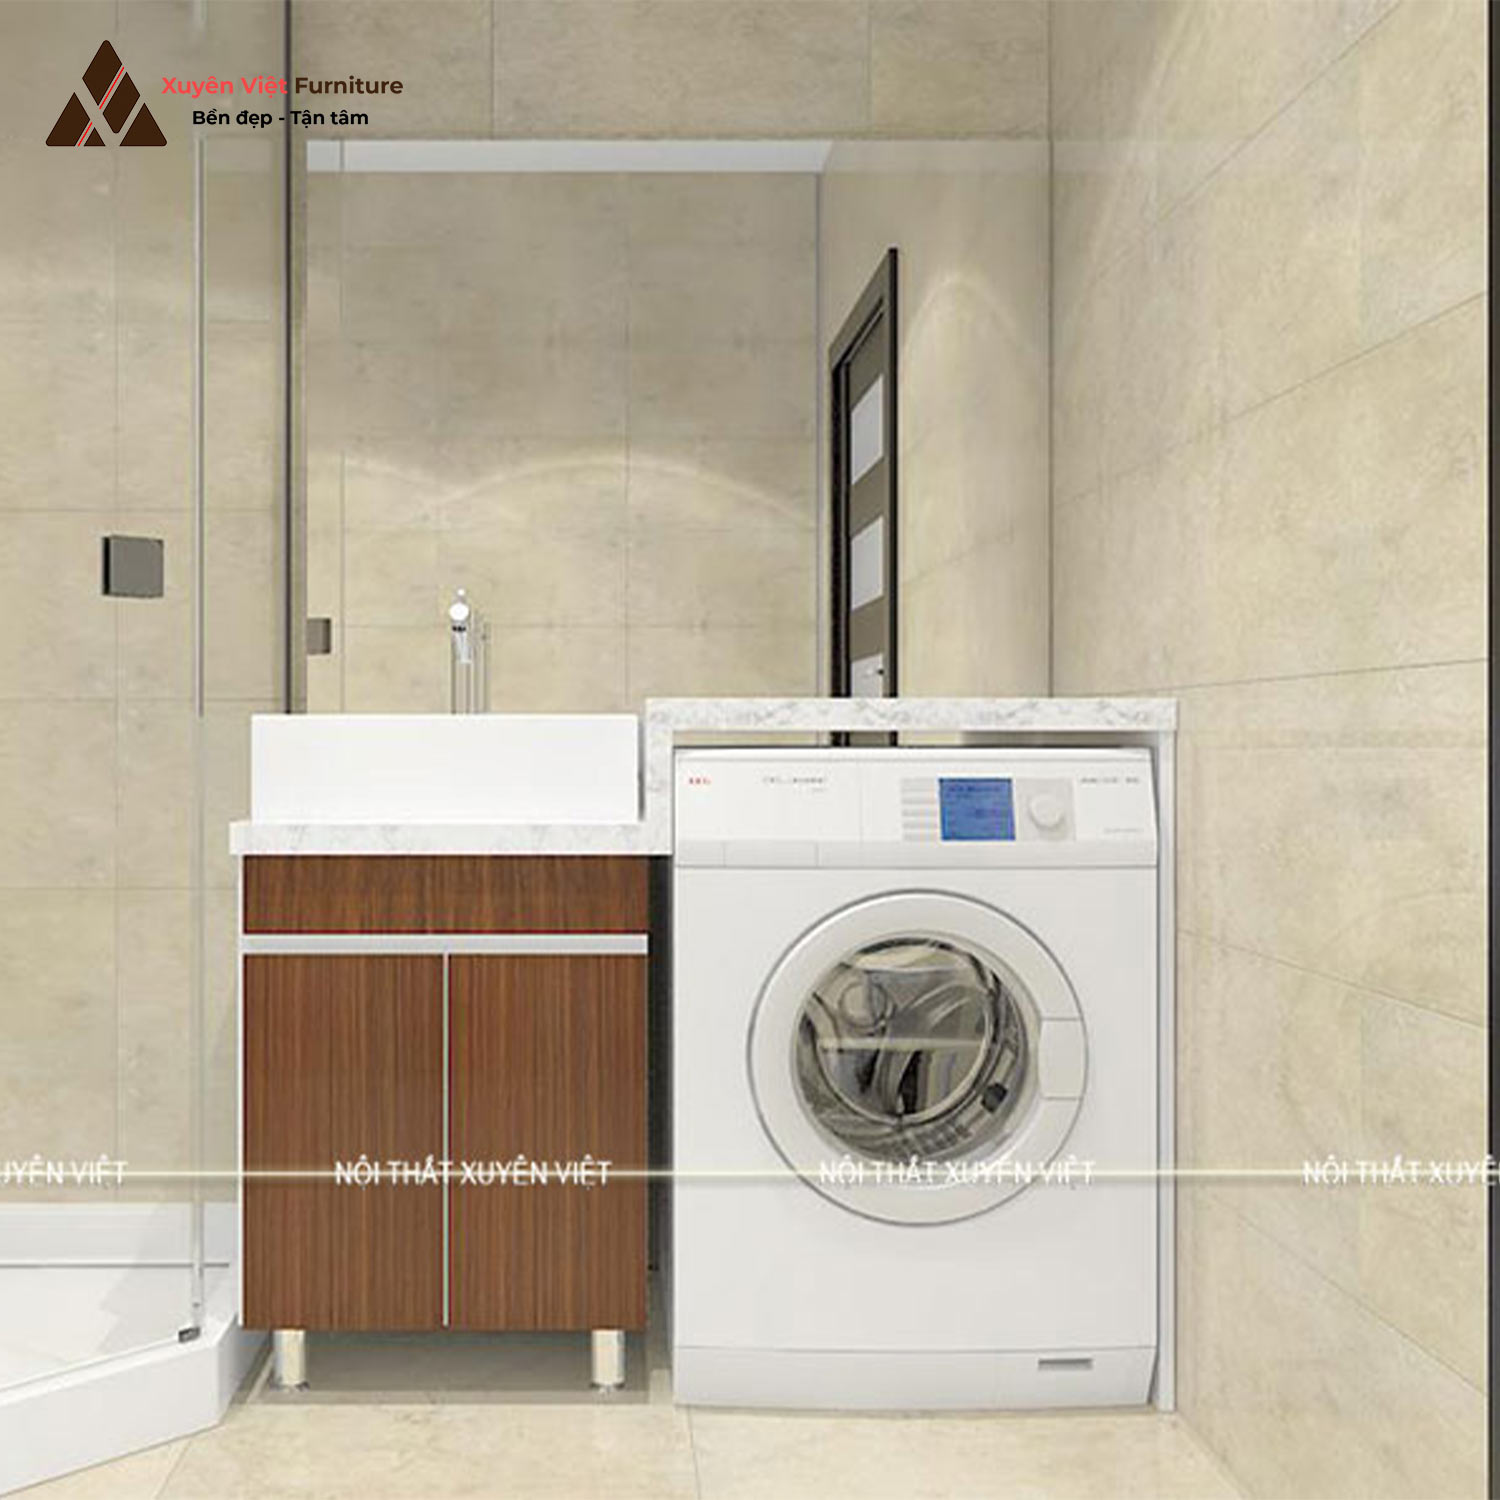 Hình ảnh bộ tủ lavabo laminate kết hợp khoang chứa máy giặt XVL739 tại Xuyên Việt thiết kế cho phòng tắm nhà anh Phúc